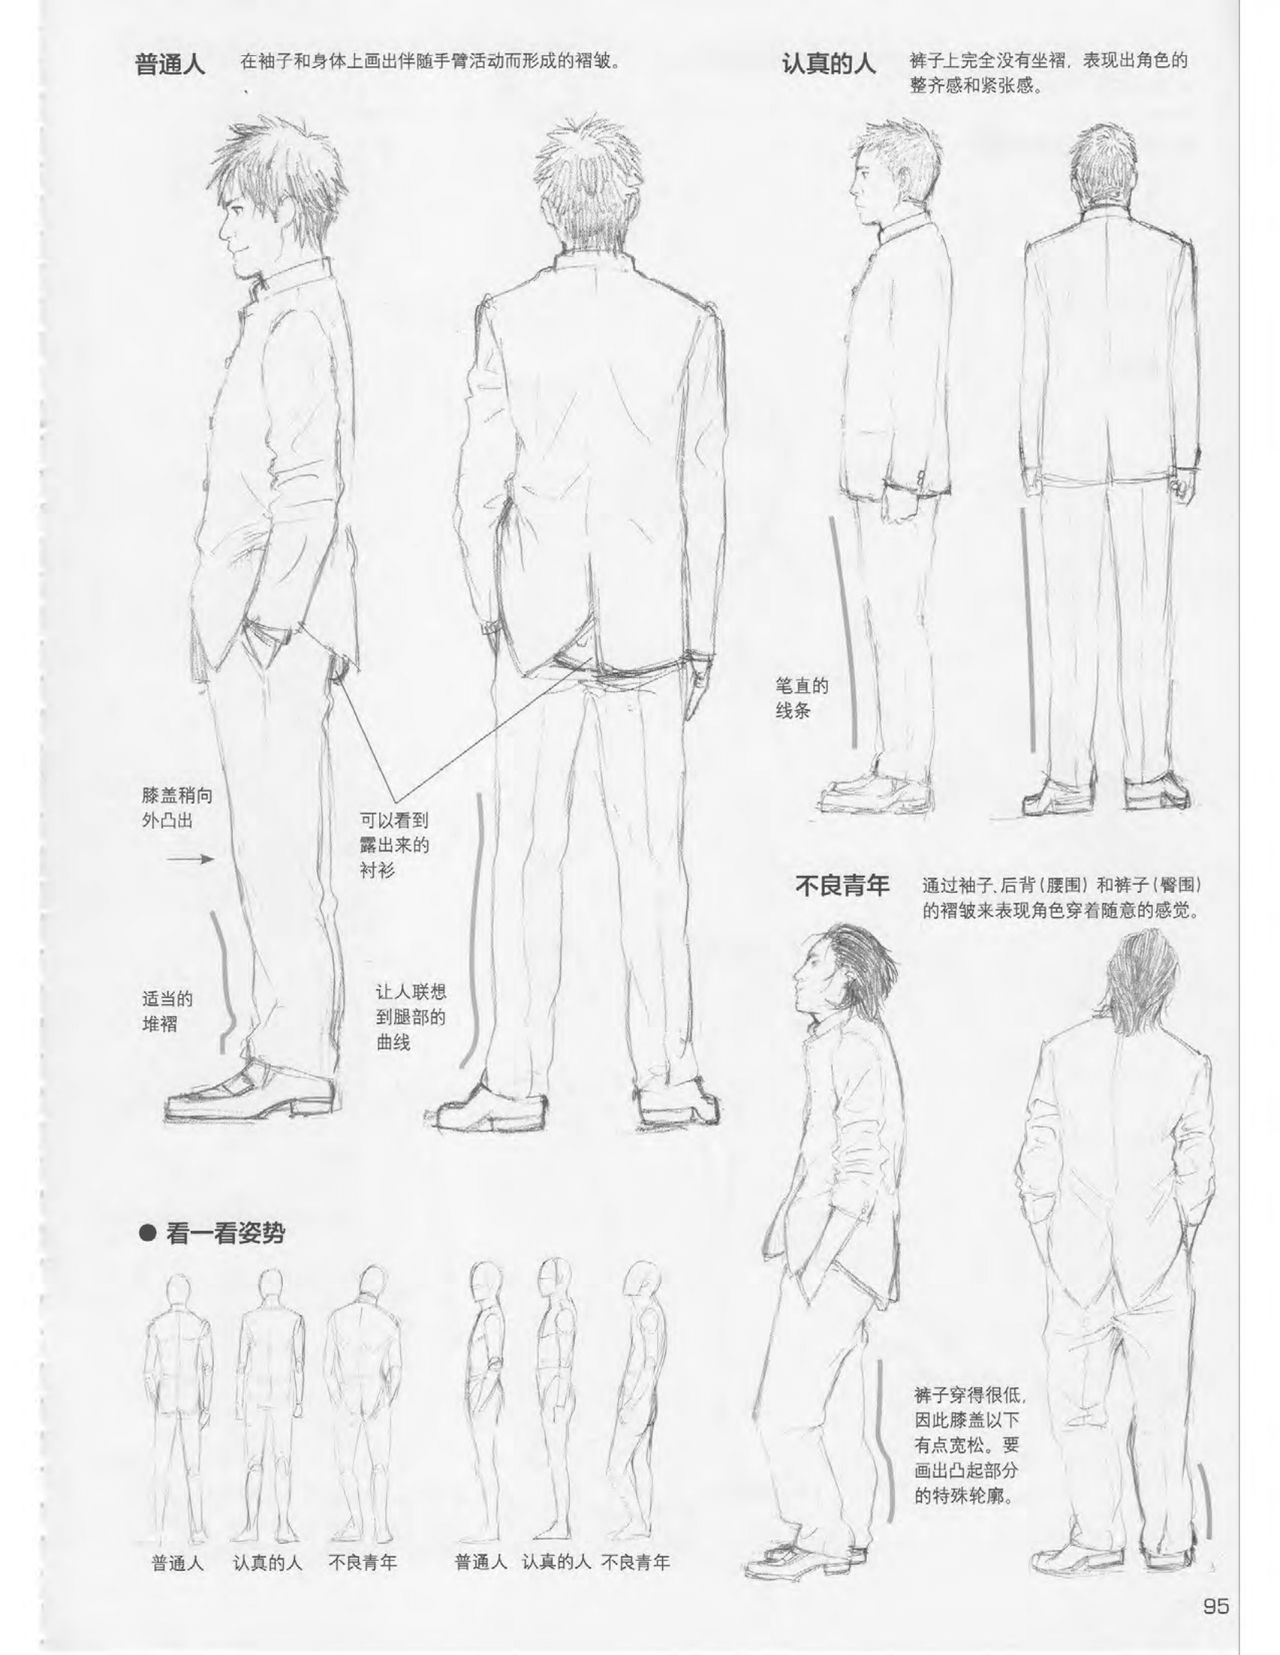 Japanese Manga Master Lecture 3: Lin Akira and Kakumaru Maru Talk About Glamorous Character Modeling 95